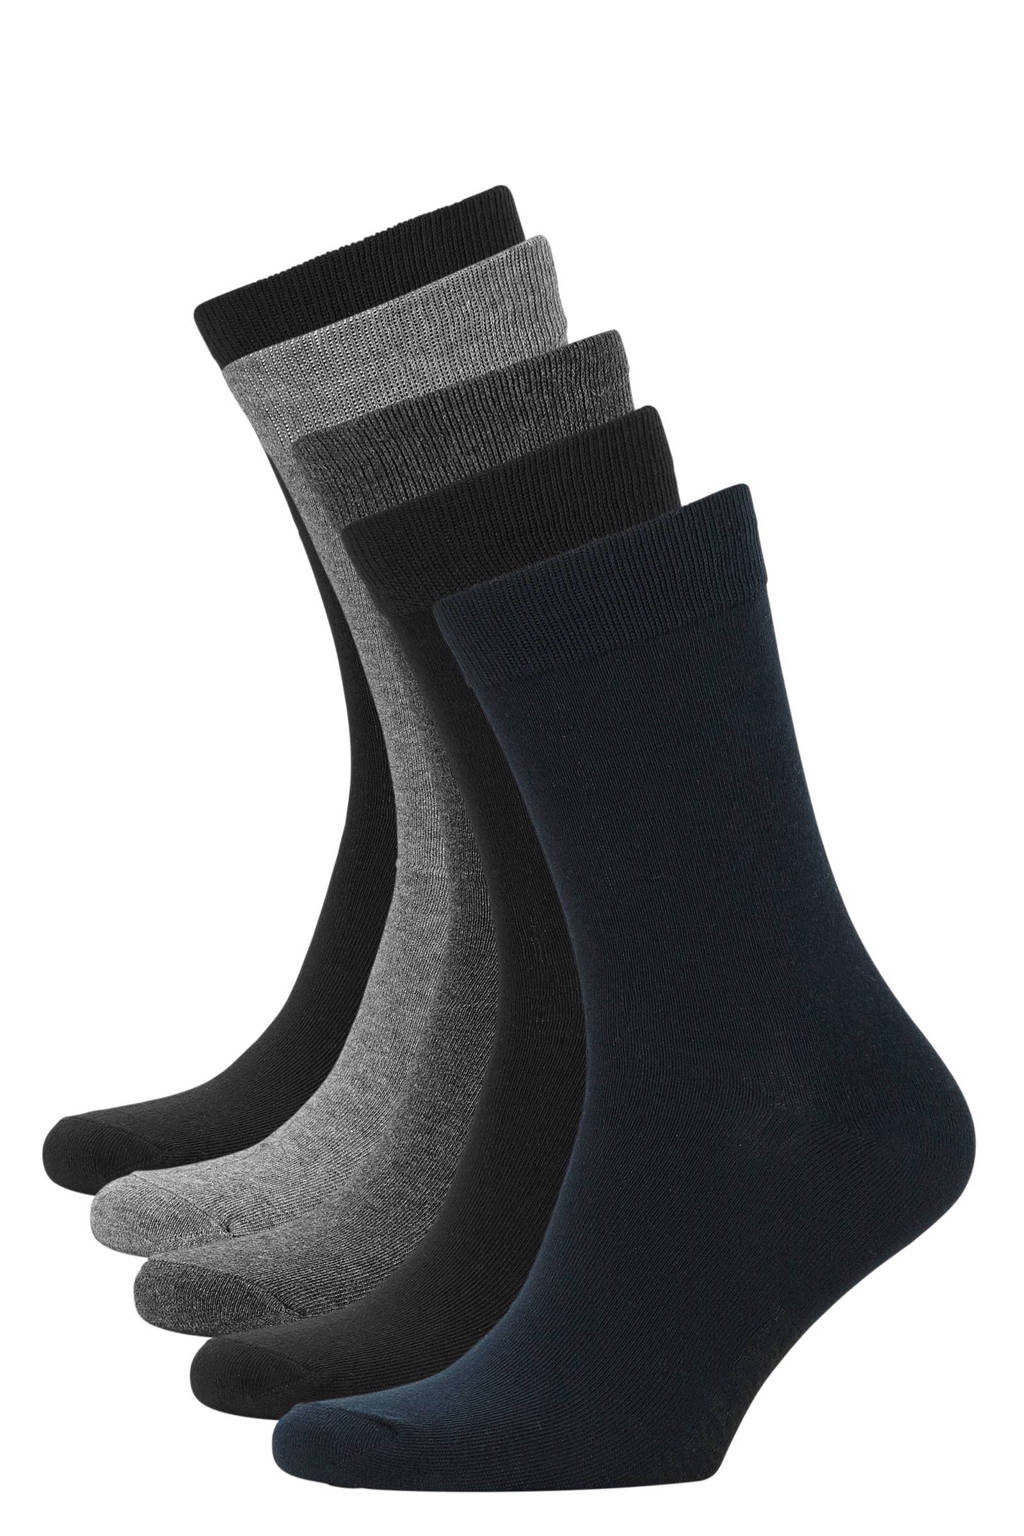 JACK & JONES sokken set van 5 paar antraciet, Zwart/navy/grijs